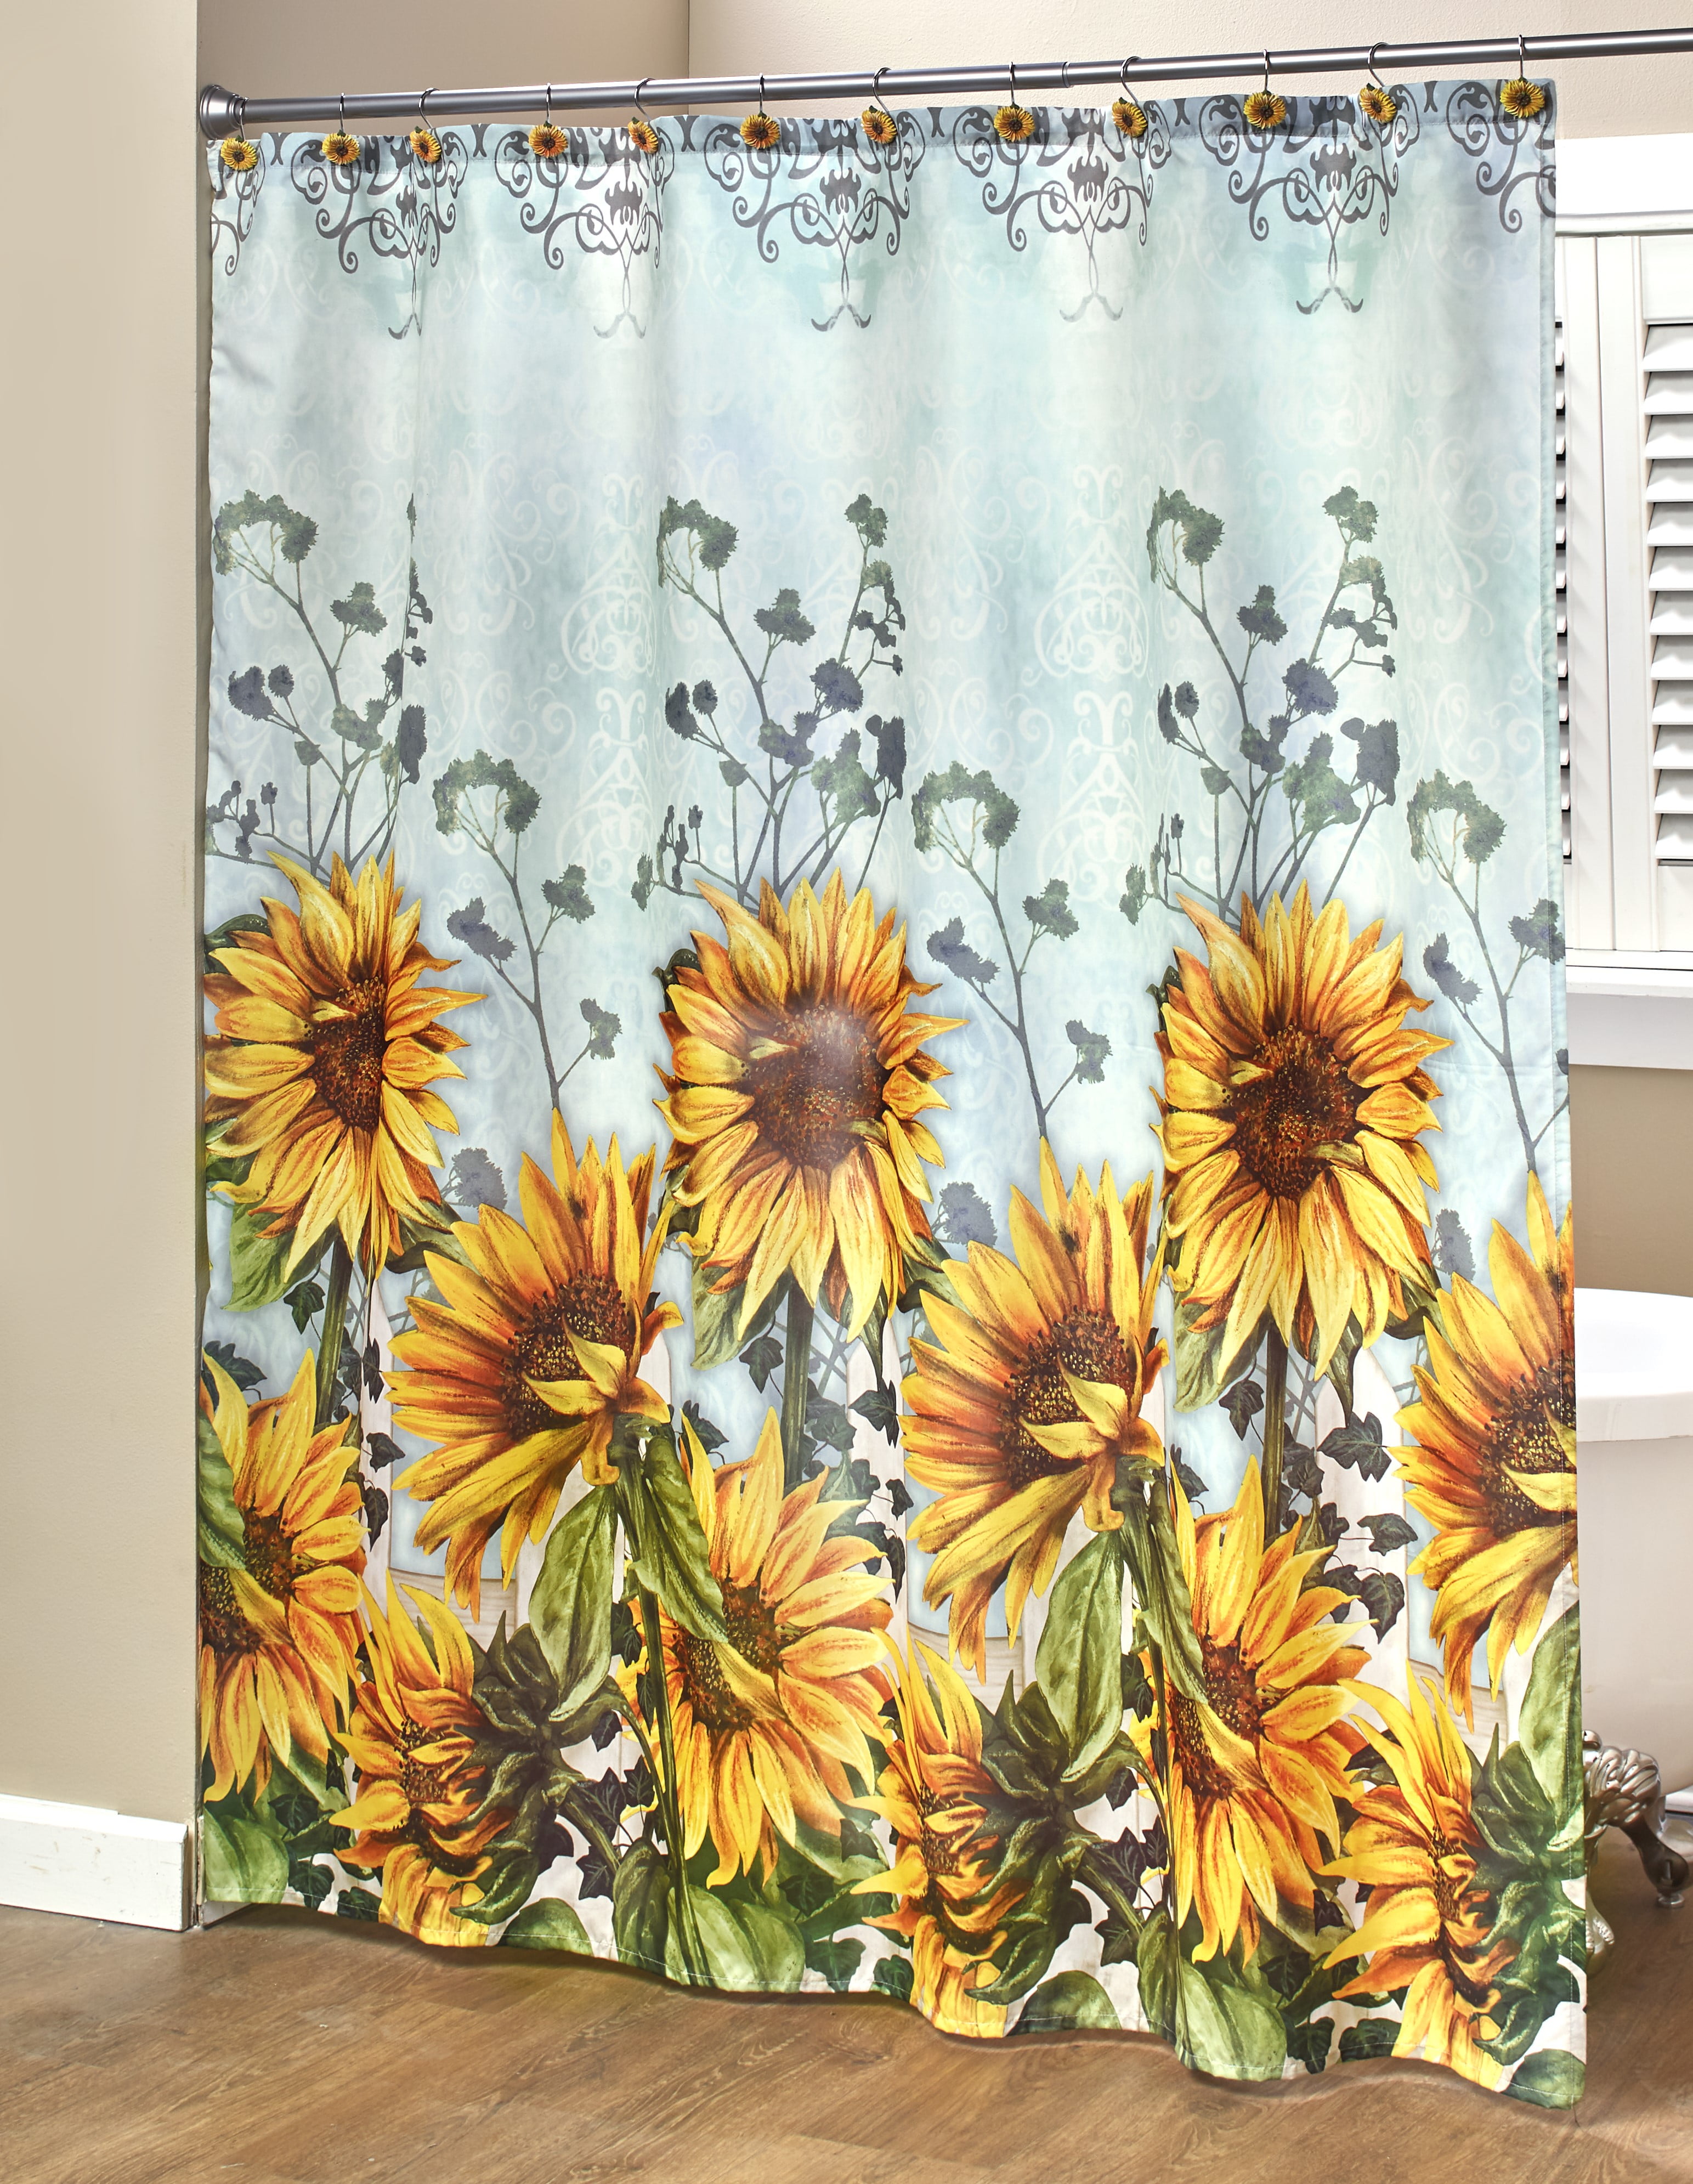 Bathroom Shower Curtain Sunflower on vintage wood Waterproof Fabric & Hooks 71" 